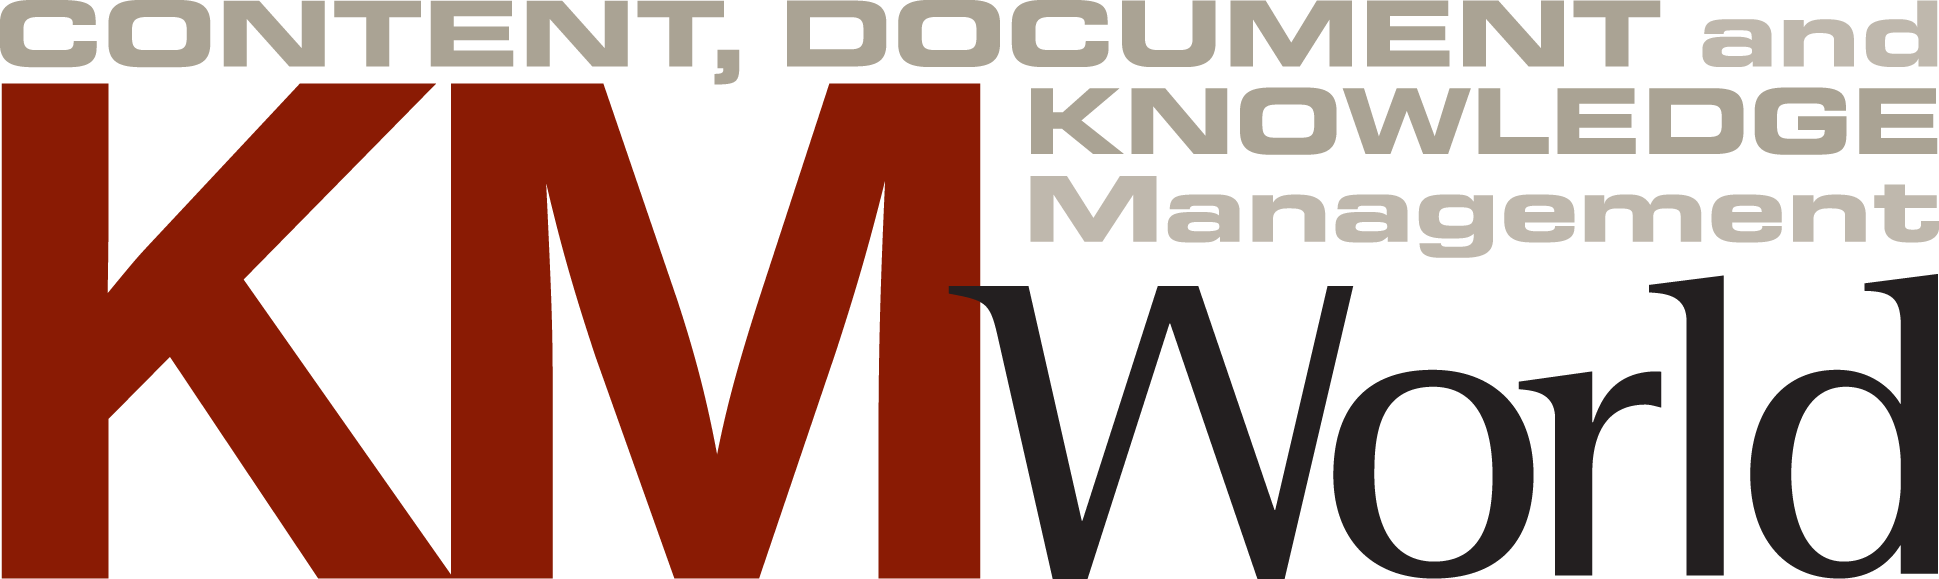 KMWorld Logo - We Support | MER CONFERENCE 2019